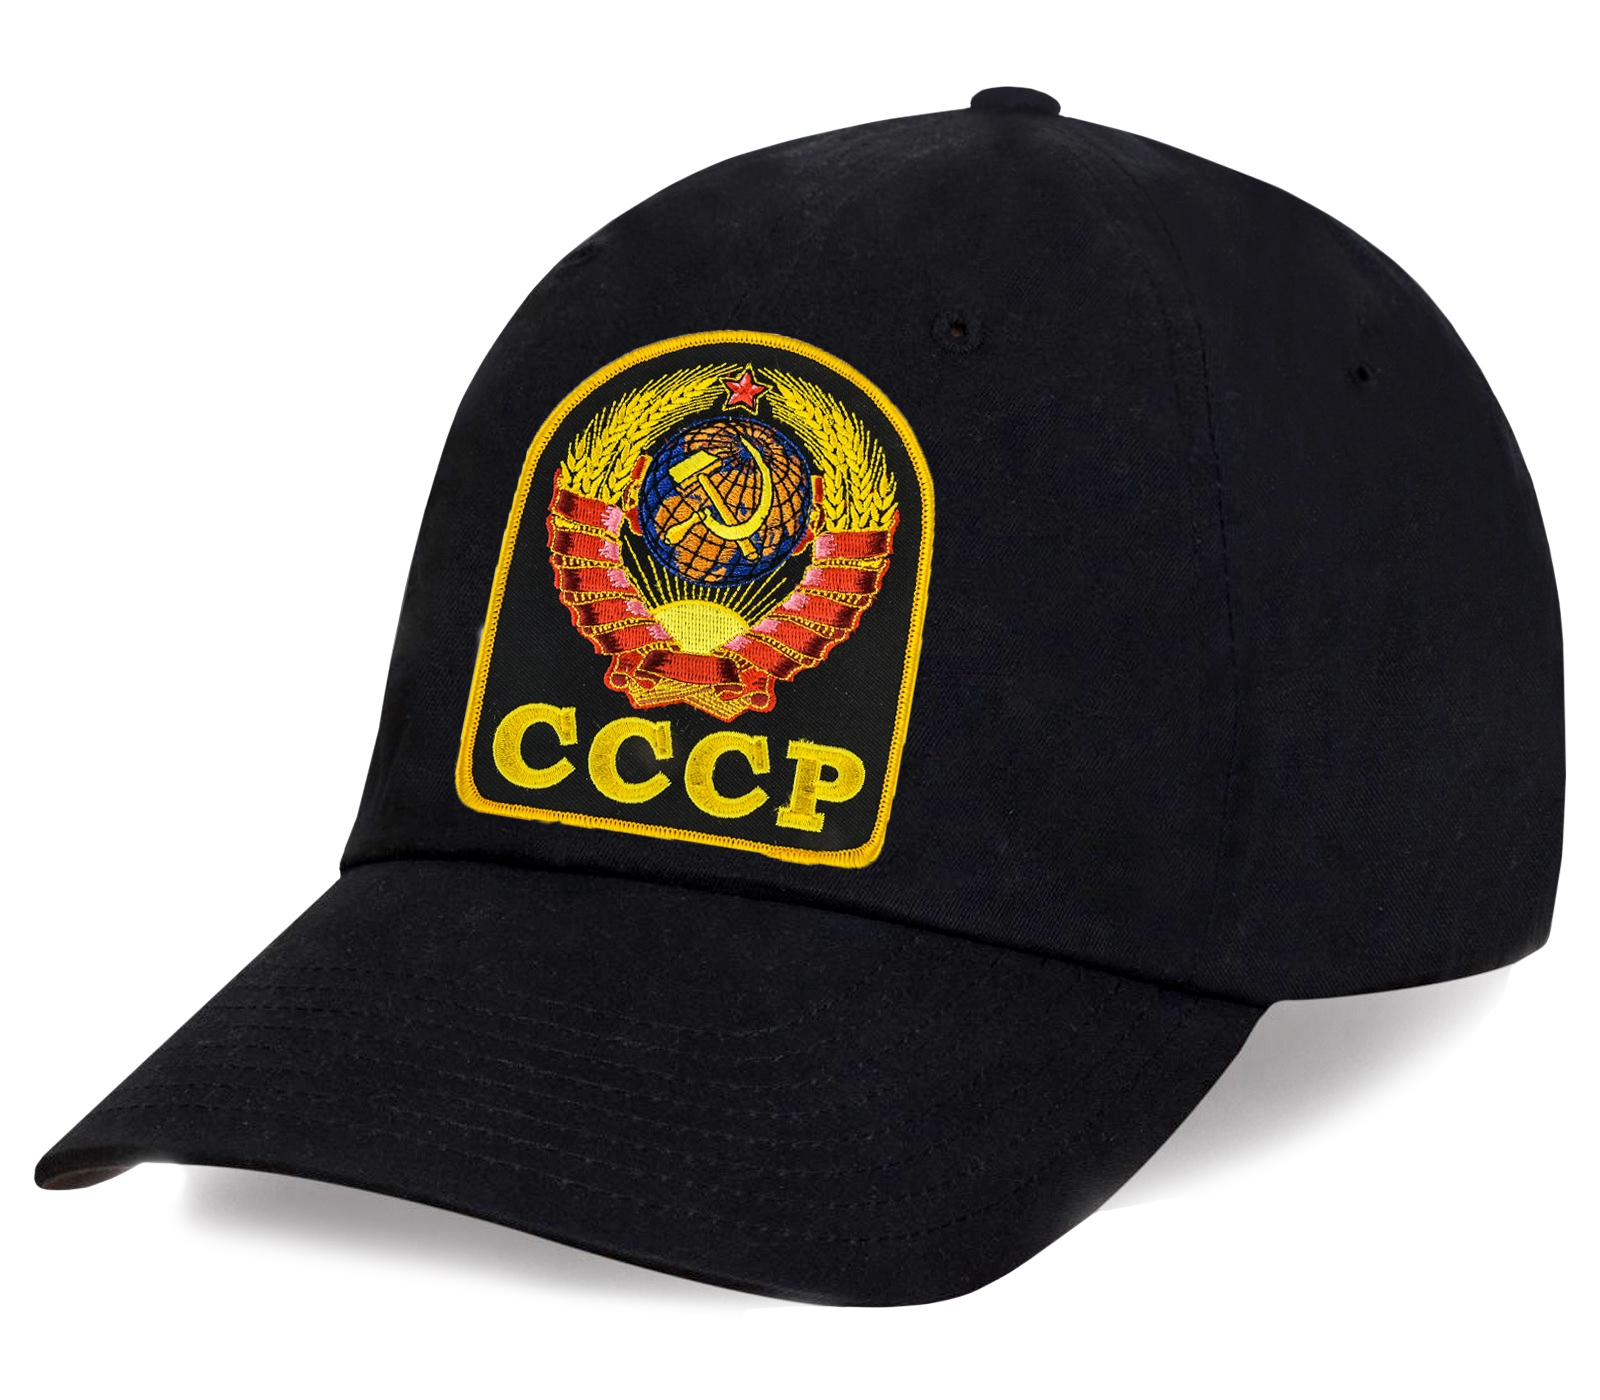 Заказать черную кепку с Гербом СССР по демократической цене